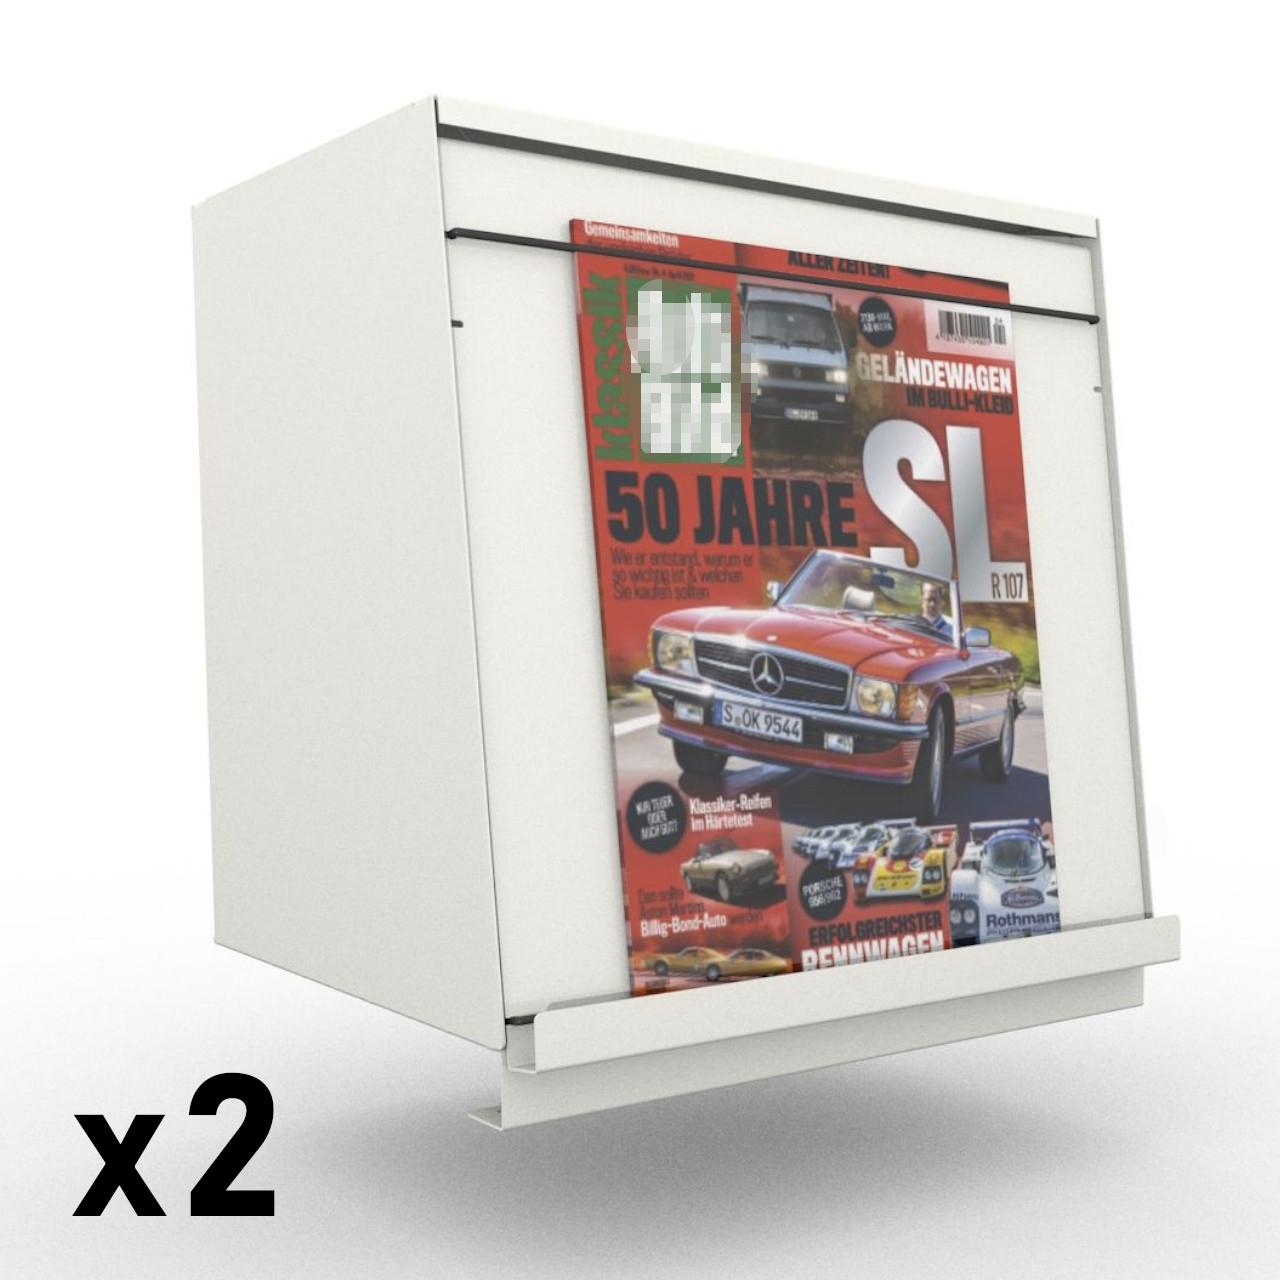 MAG BOX, Zeitschriftenbox für Magazine  MAG-BOX wird direkt auf den Fachboden Ihres Regals gestellt. Tiefe des Fachbodens 250 mm. Es ist eine komplette Zeitschriftenbox mit einer schrägen Klappe zur Präsentation der Zeitschrift. Diese Klappe ist mit zwei